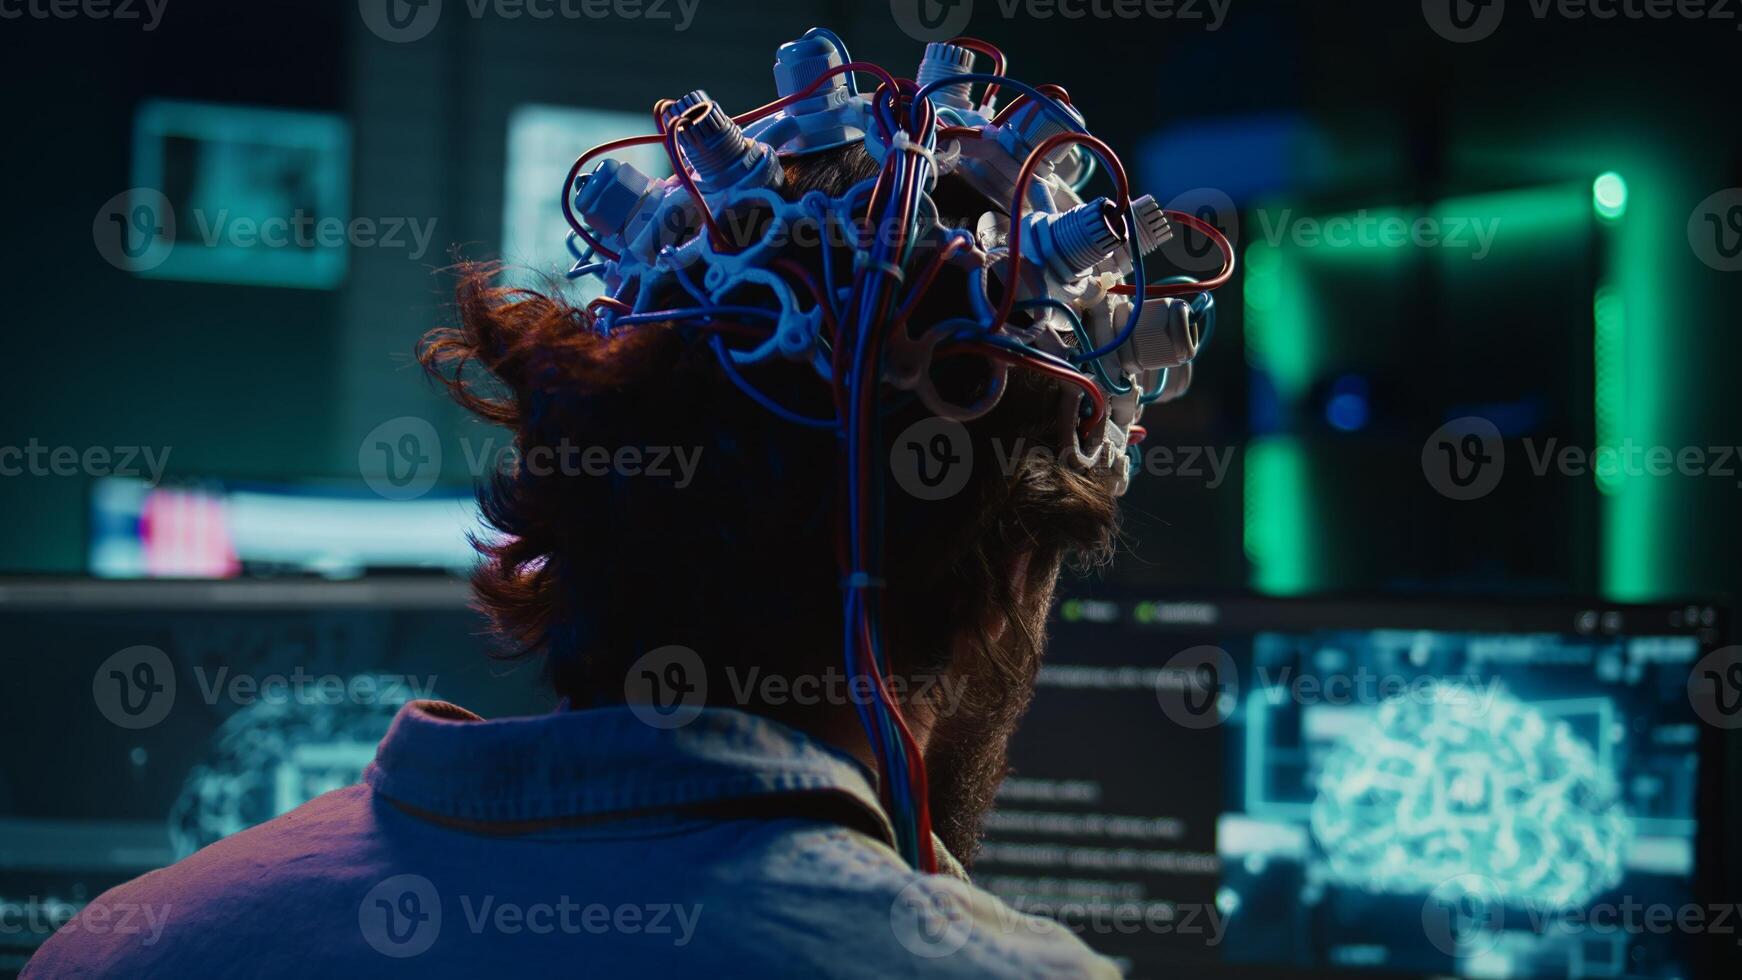 ingeniero pone eeg auriculares en, Enlaces cerebro a ciberespacio, conduce experimentos hombre fusionando mente con artificial inteligencia, subiendo conciencia, lograr superinteligencia, cámara si cerca arriba foto